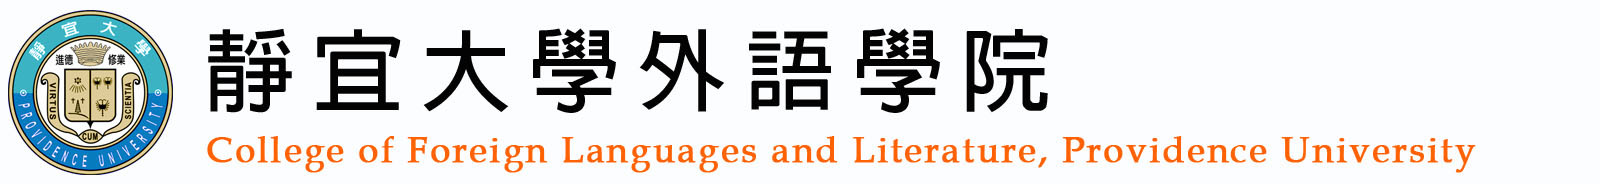 靜宜大學外語學院測試logo